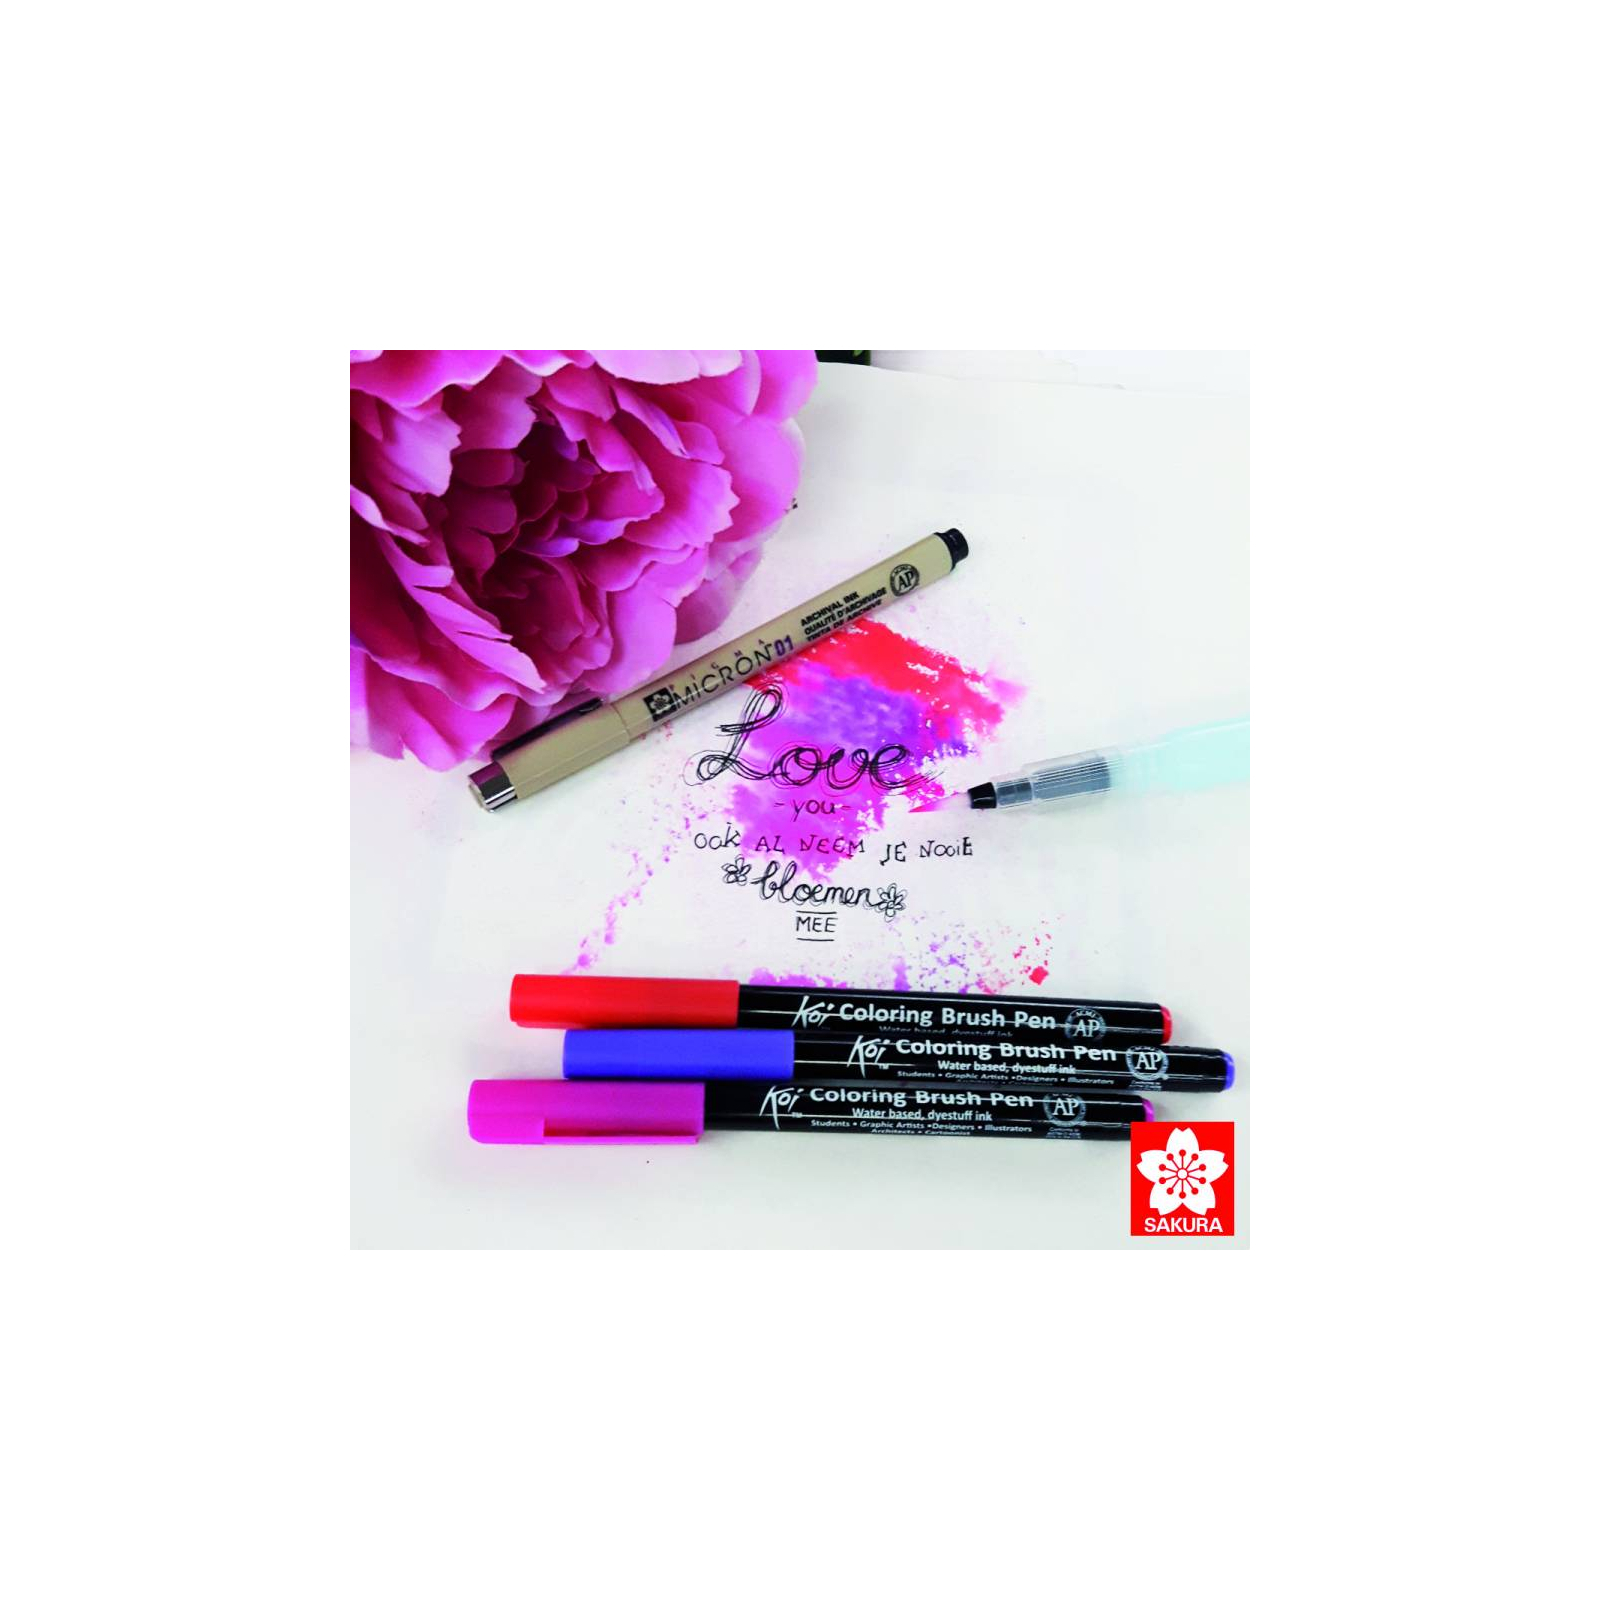 Художественный маркер KOI набор Coloring Brush Pen, 12 цветов (084511391772) изображение 3